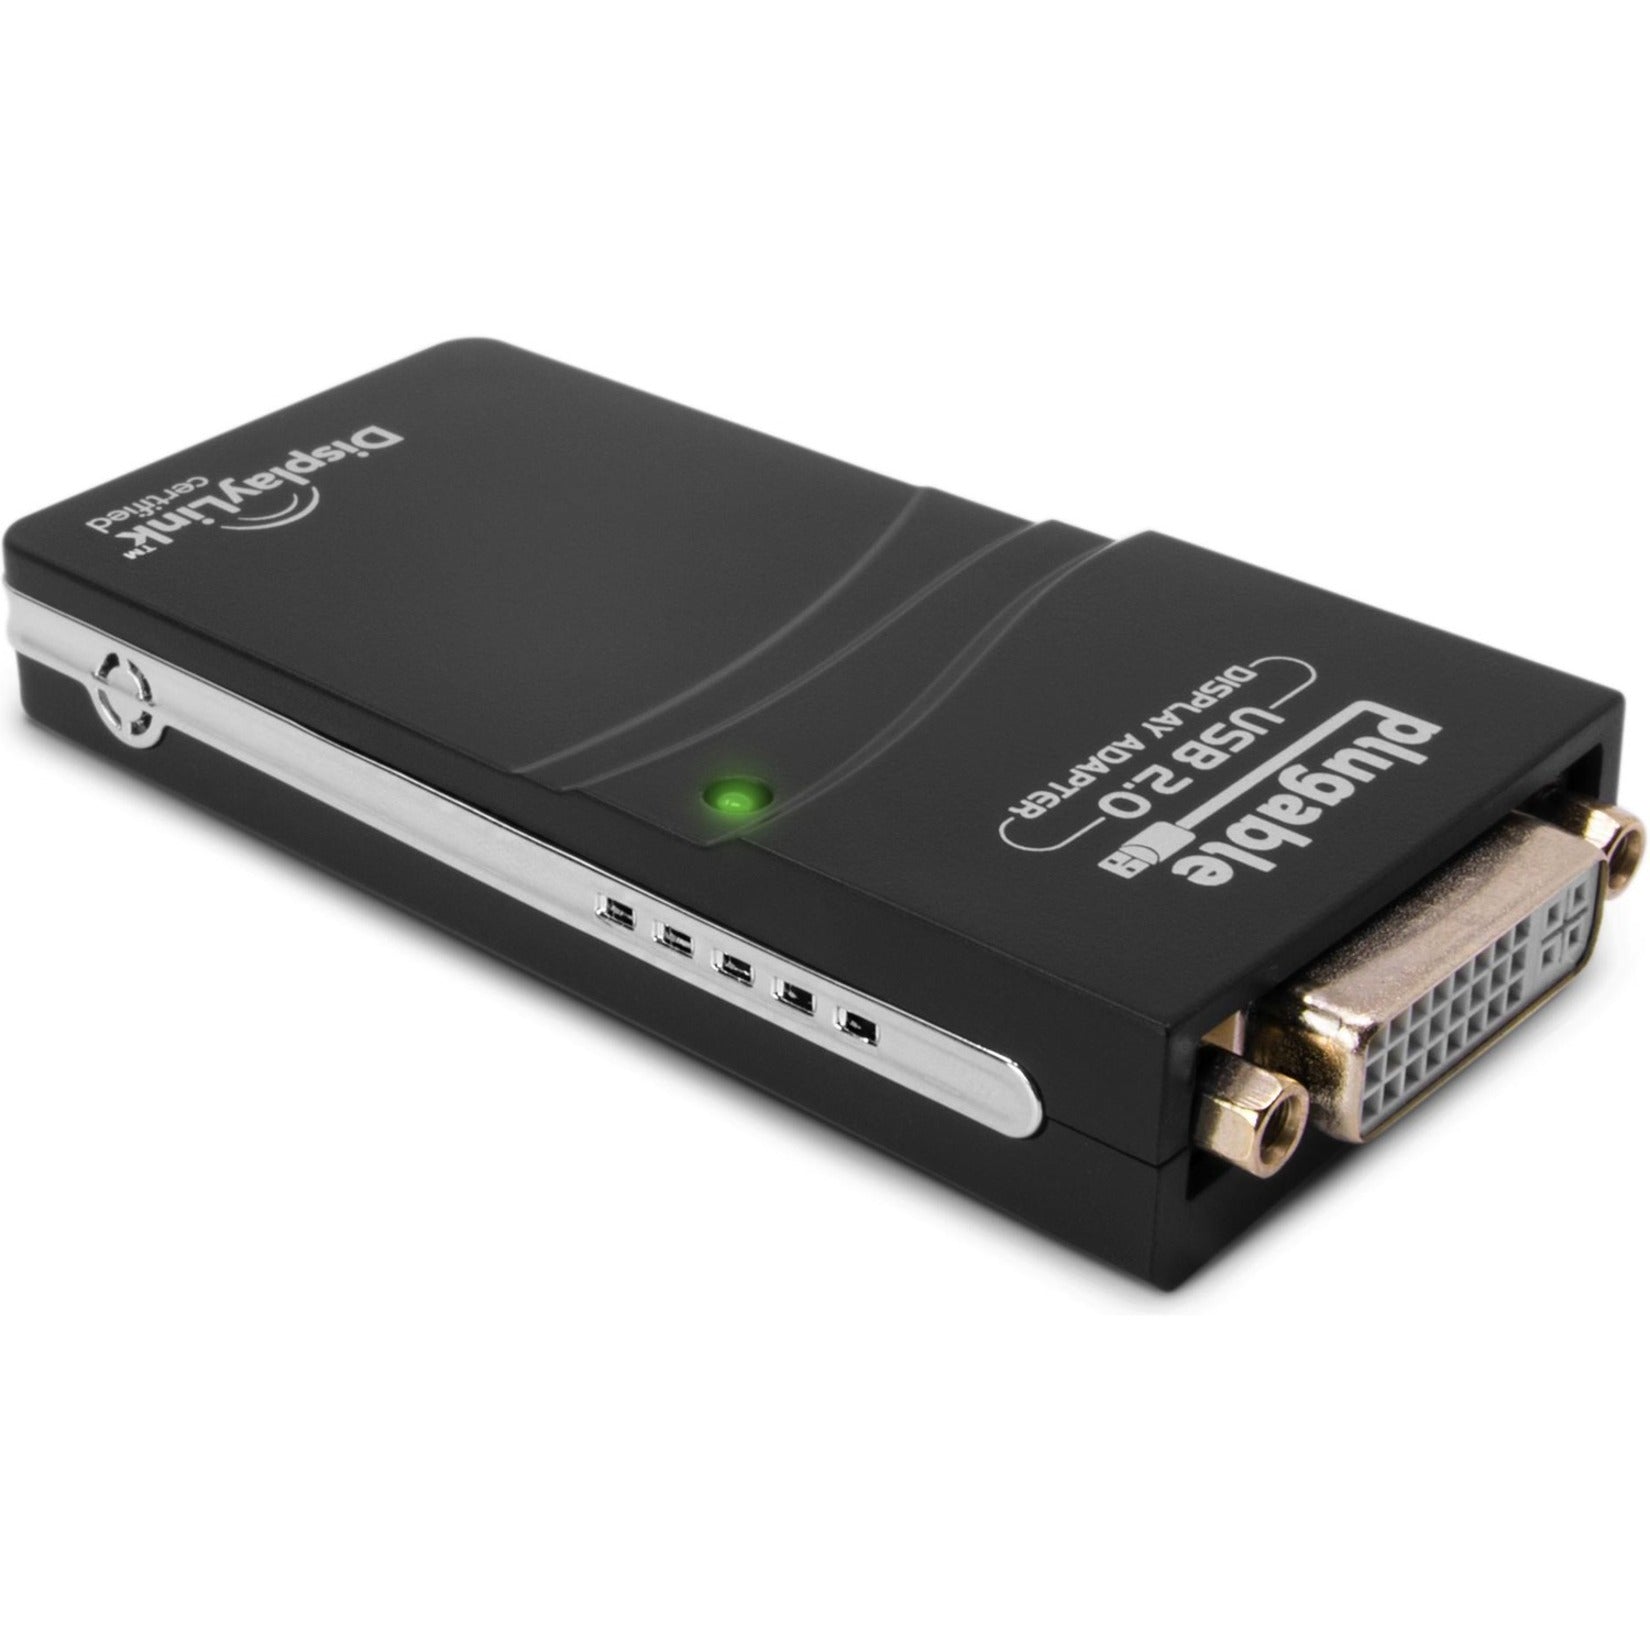 Plugable UGA-165 USB 2.0 to DVI/VGA/HDMI Video Graphics Adapter for Multiple Monitors, Plug and Play